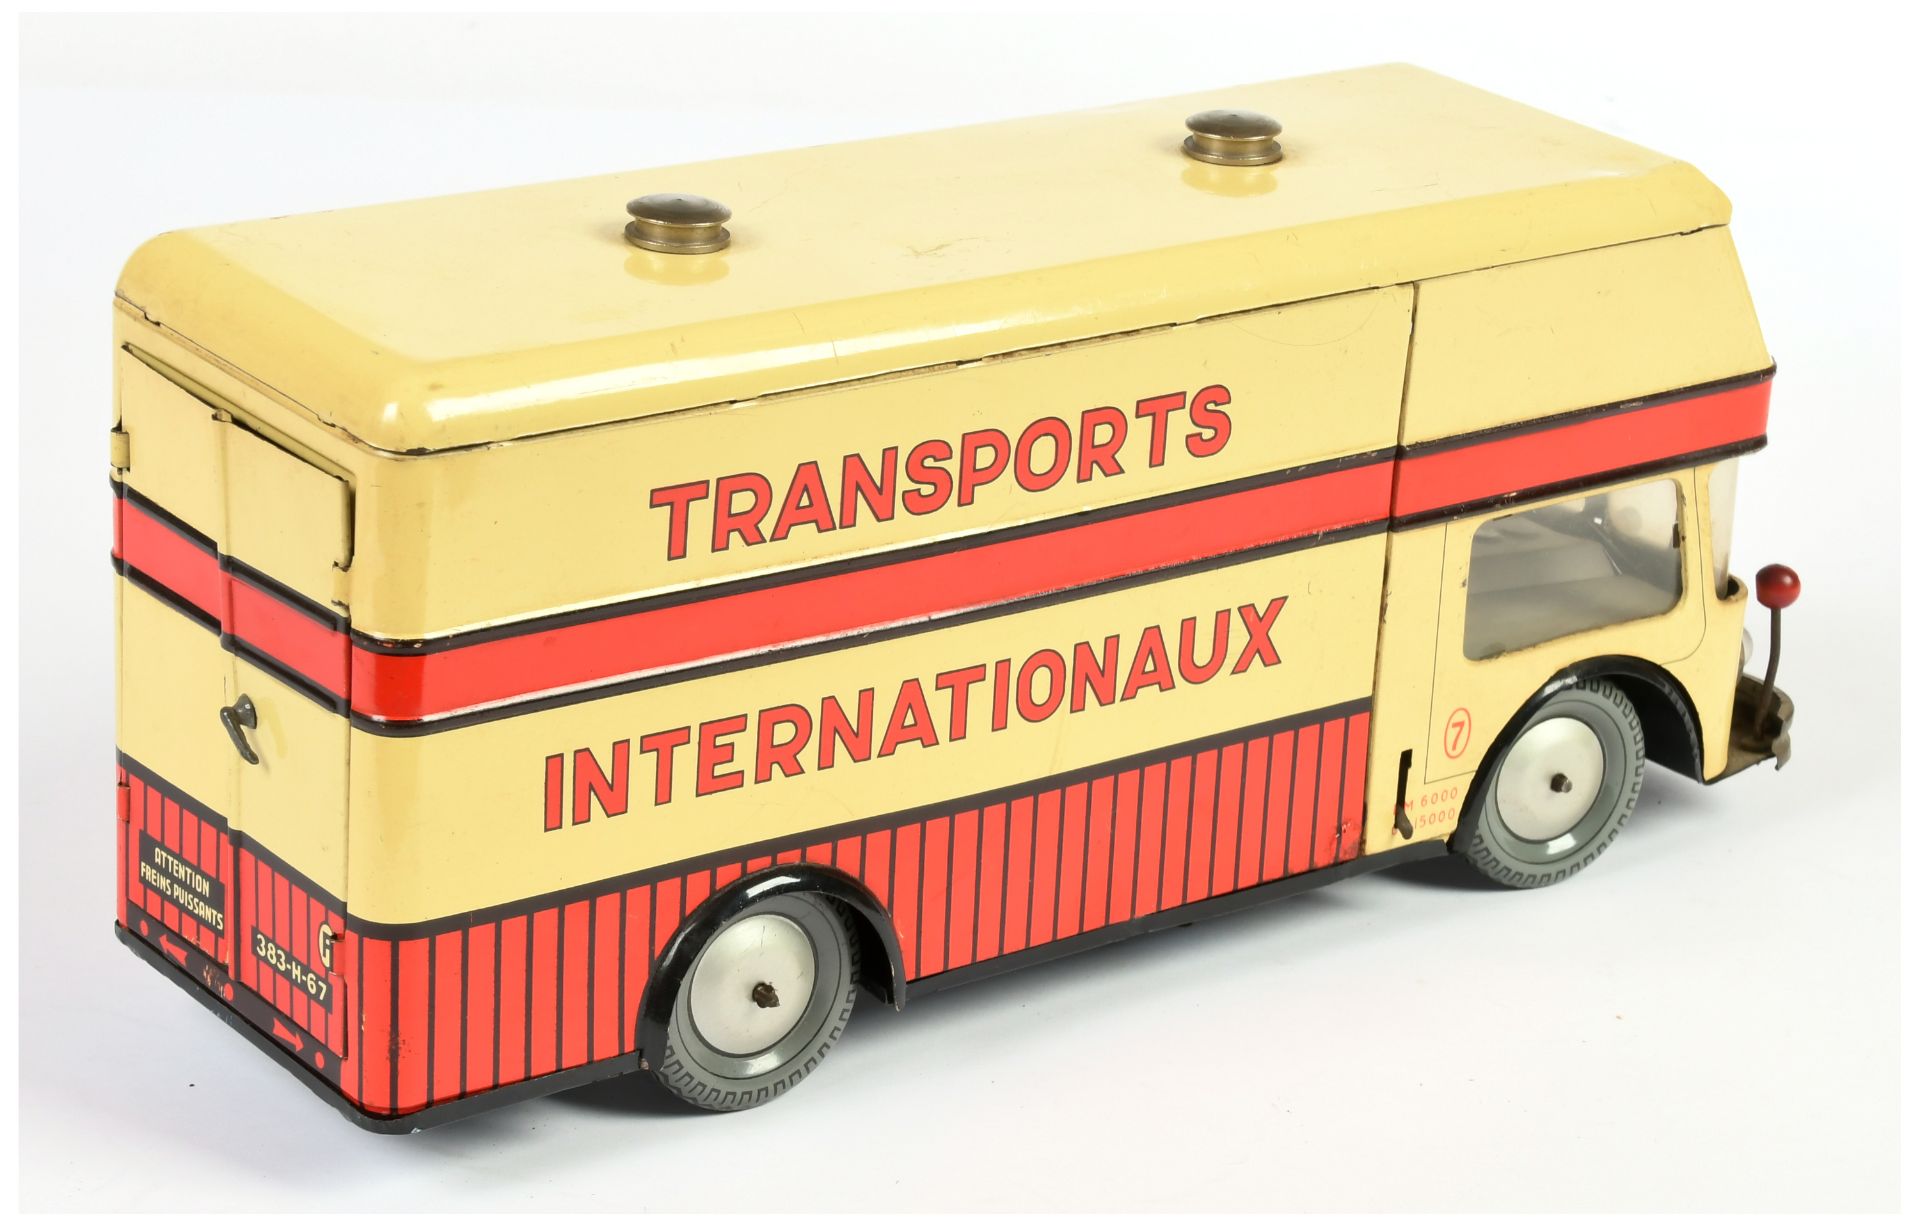 Joustra Transports Internationaux truck - Image 2 of 2